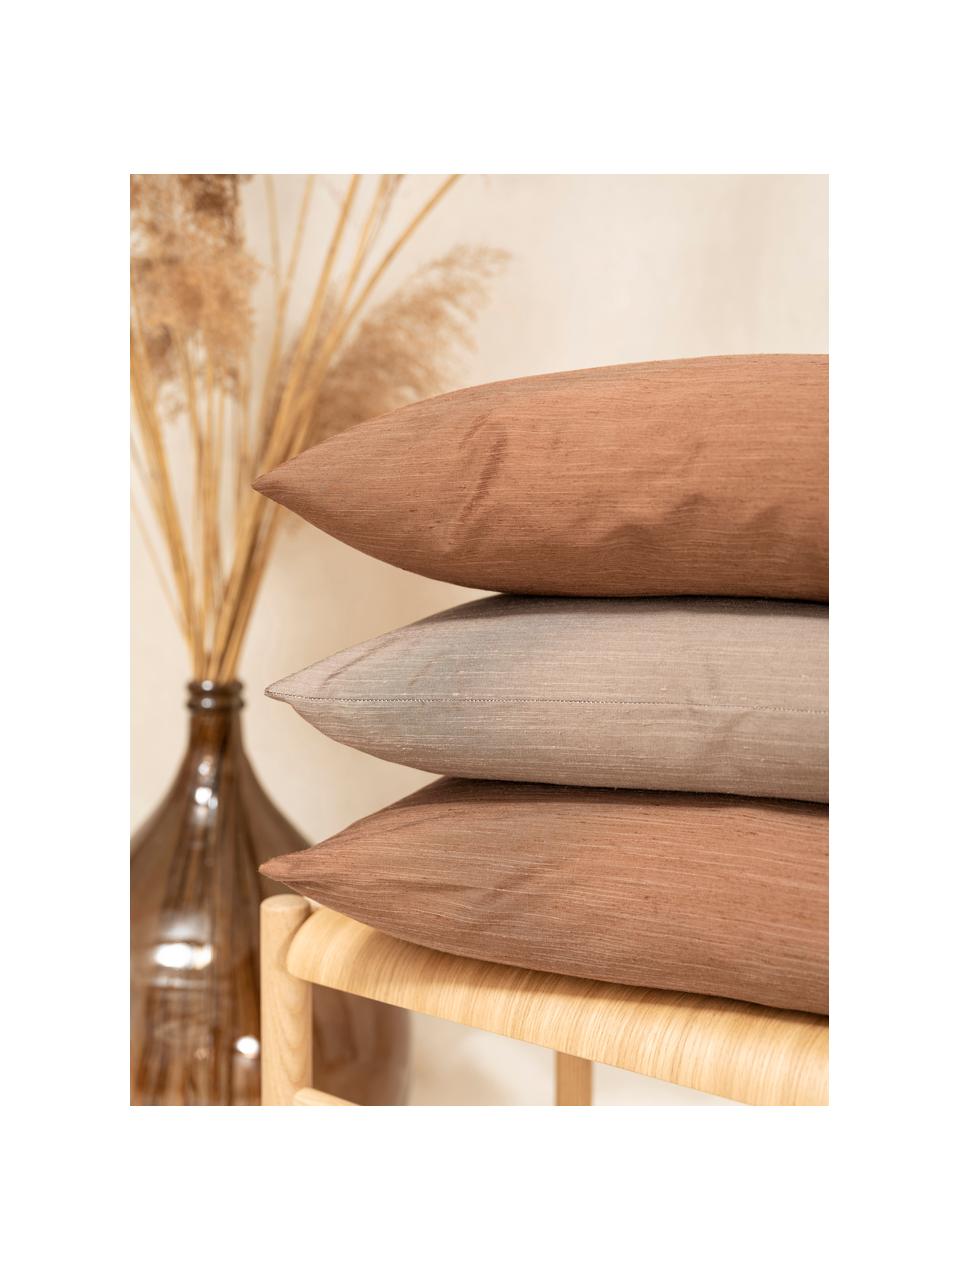 Kussenhoes Malu in zijdelook, 100% polyester, Beige, 40 x 40 cm